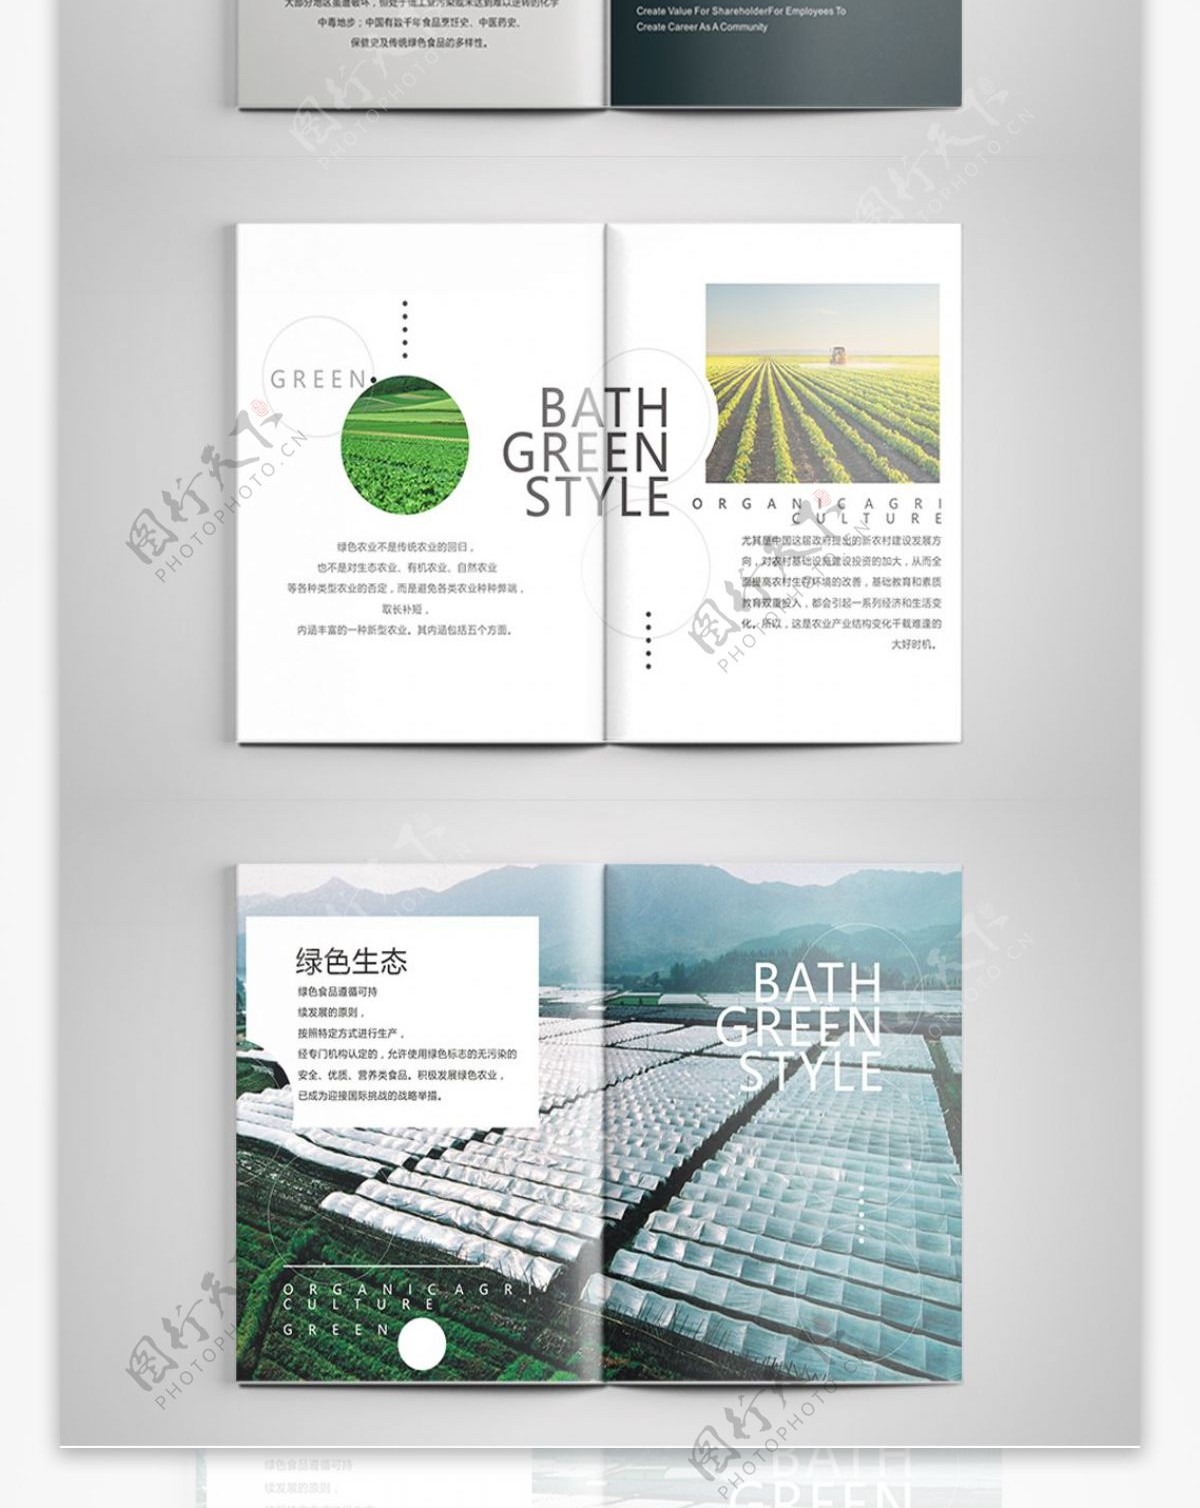 绿色大气农业绿色食品企业画册